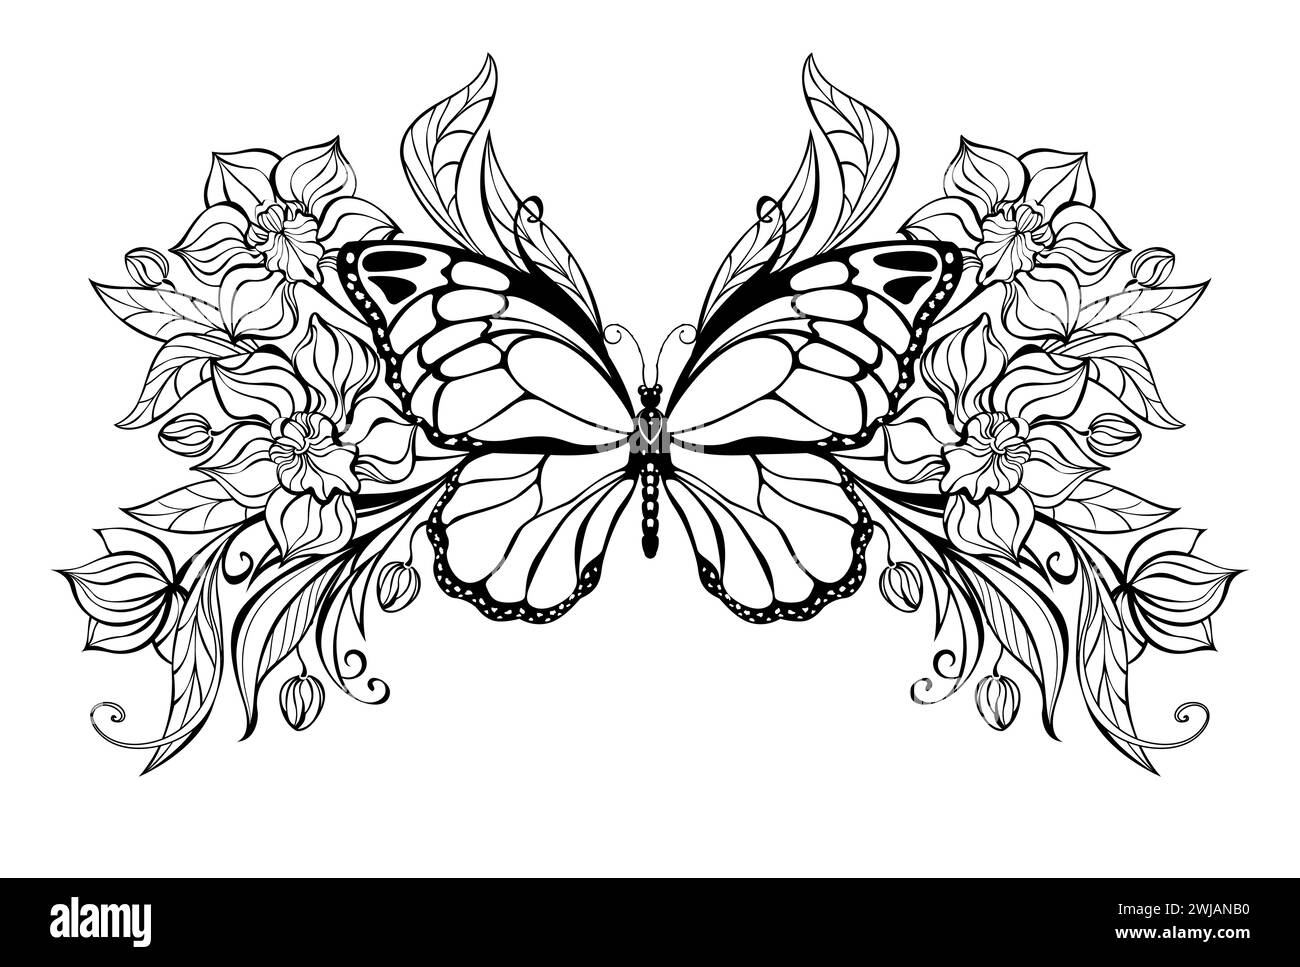 Farfalla sagomata, disegnata artisticamente con schema simmetrico di orchidee sagomate e fiorenti con piante ornamentali. Illustrazione Vettoriale